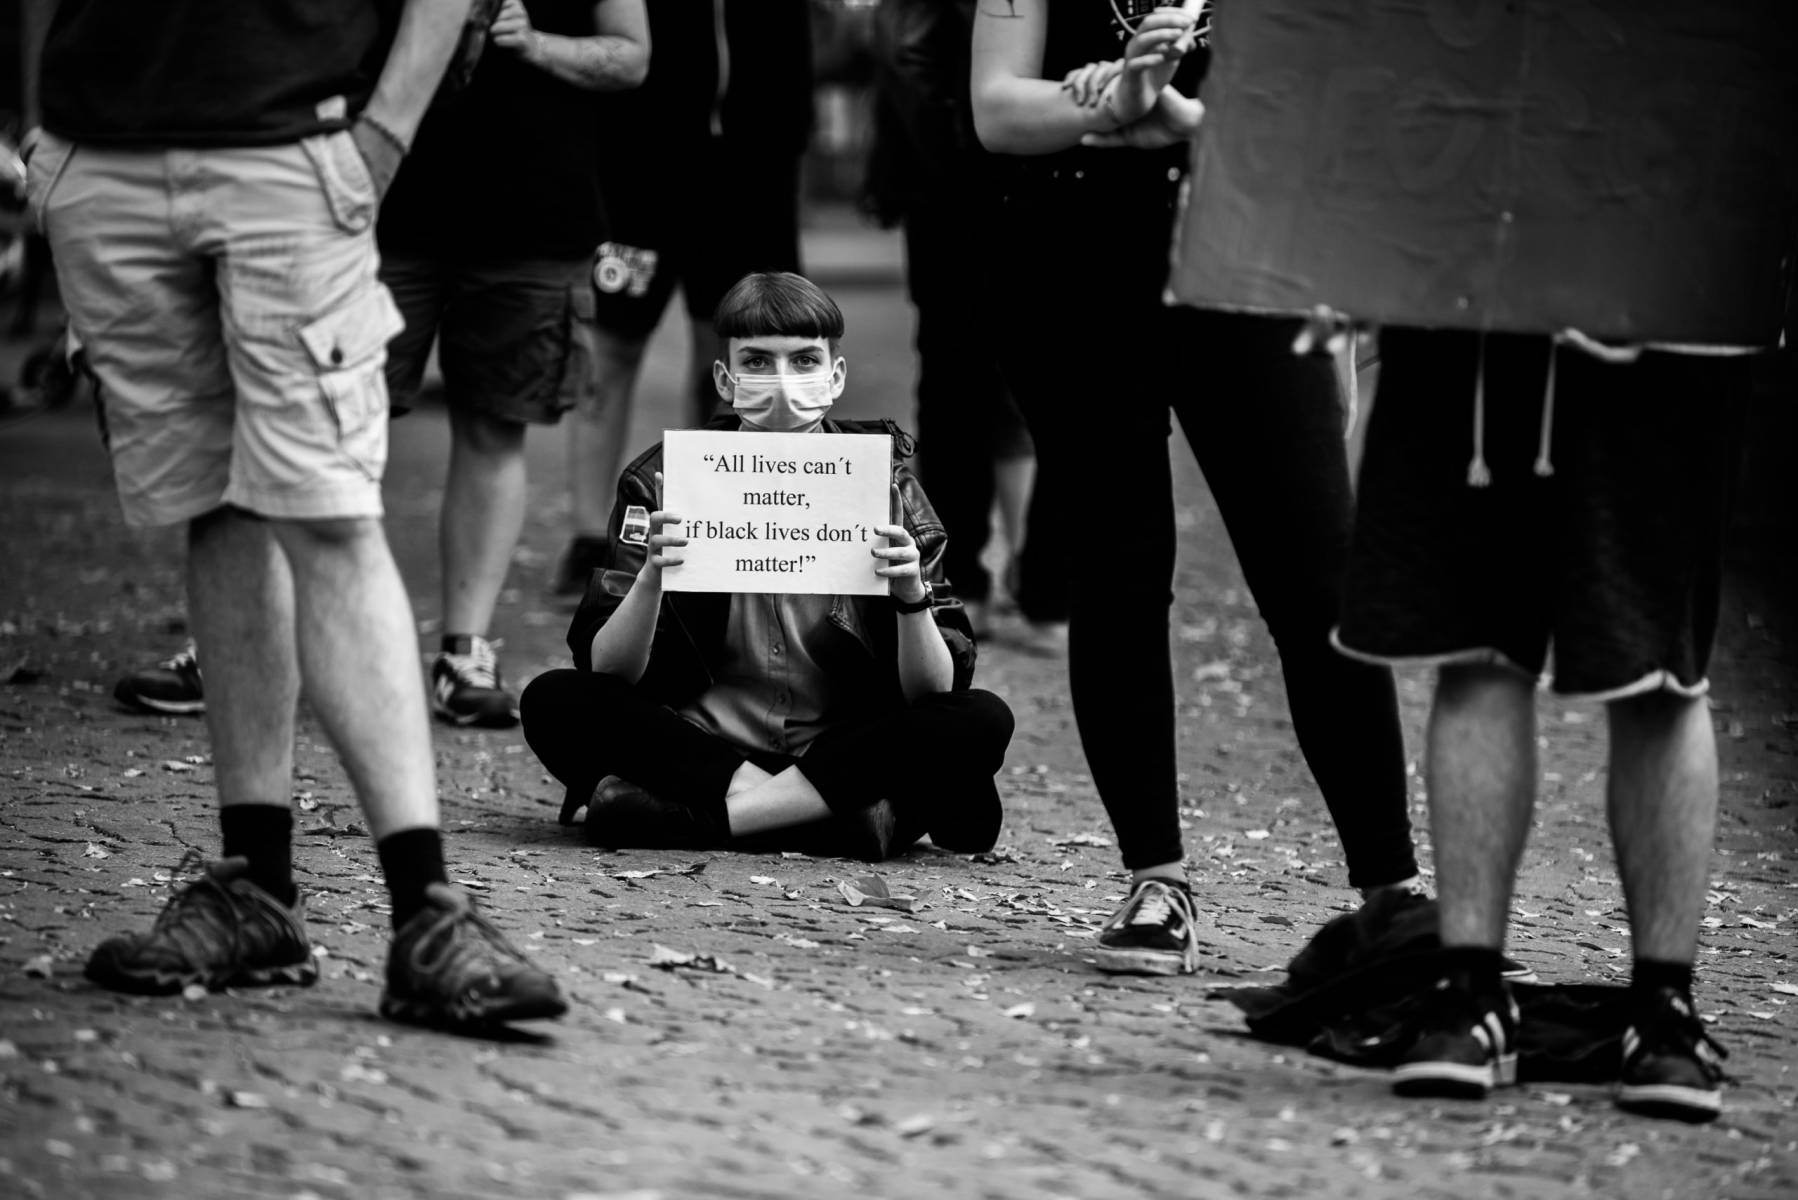 München, 03.06.2020 | Mahnwache am Rotkruezplatz für die Opfer rassistischer Polizeigewalt. 
Eine Demonstrantin hält ein Schild mit der Aufschrift: "All lives can't matter, if black lives don't matter!"